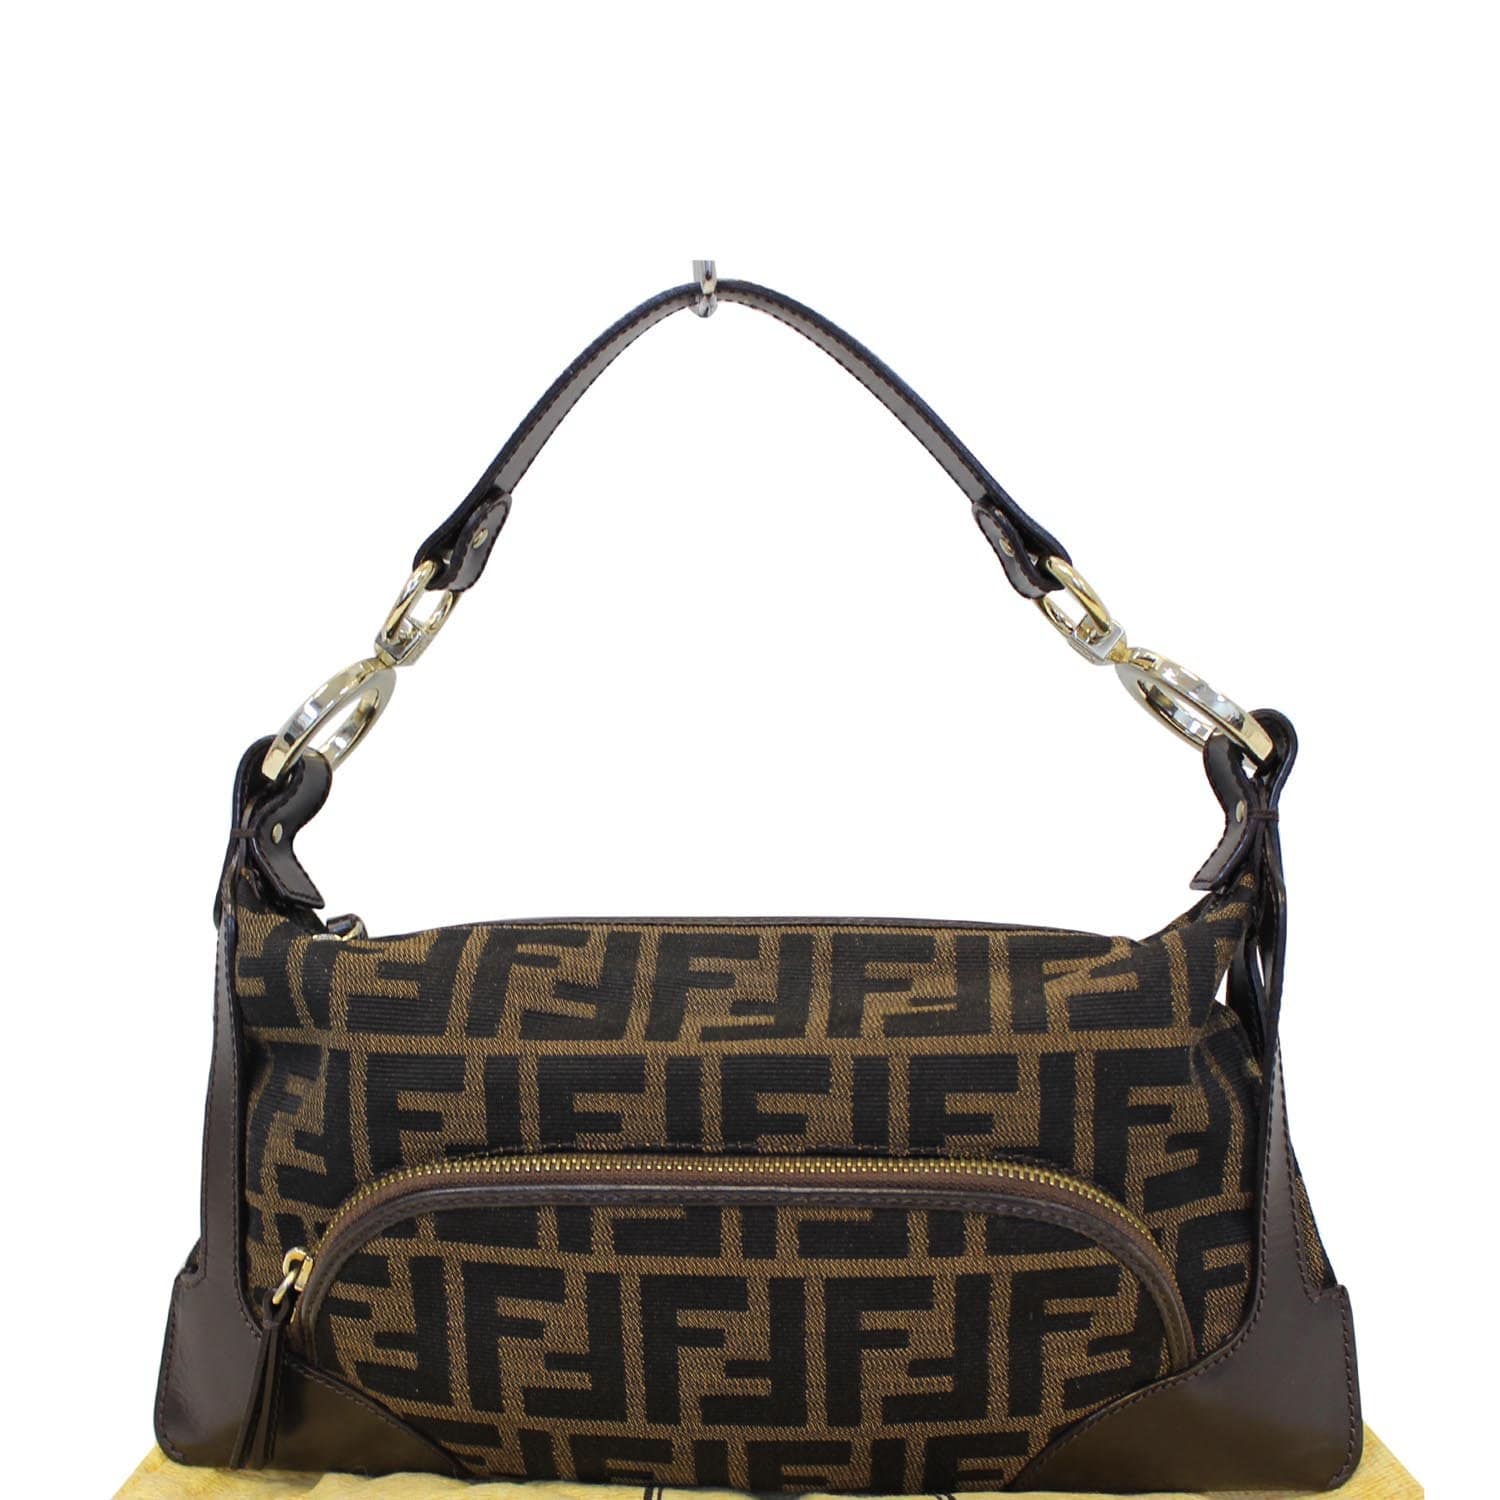 Fendi Vintage Zucca Leather Speedy Handbag Shoulder Bag. Get one